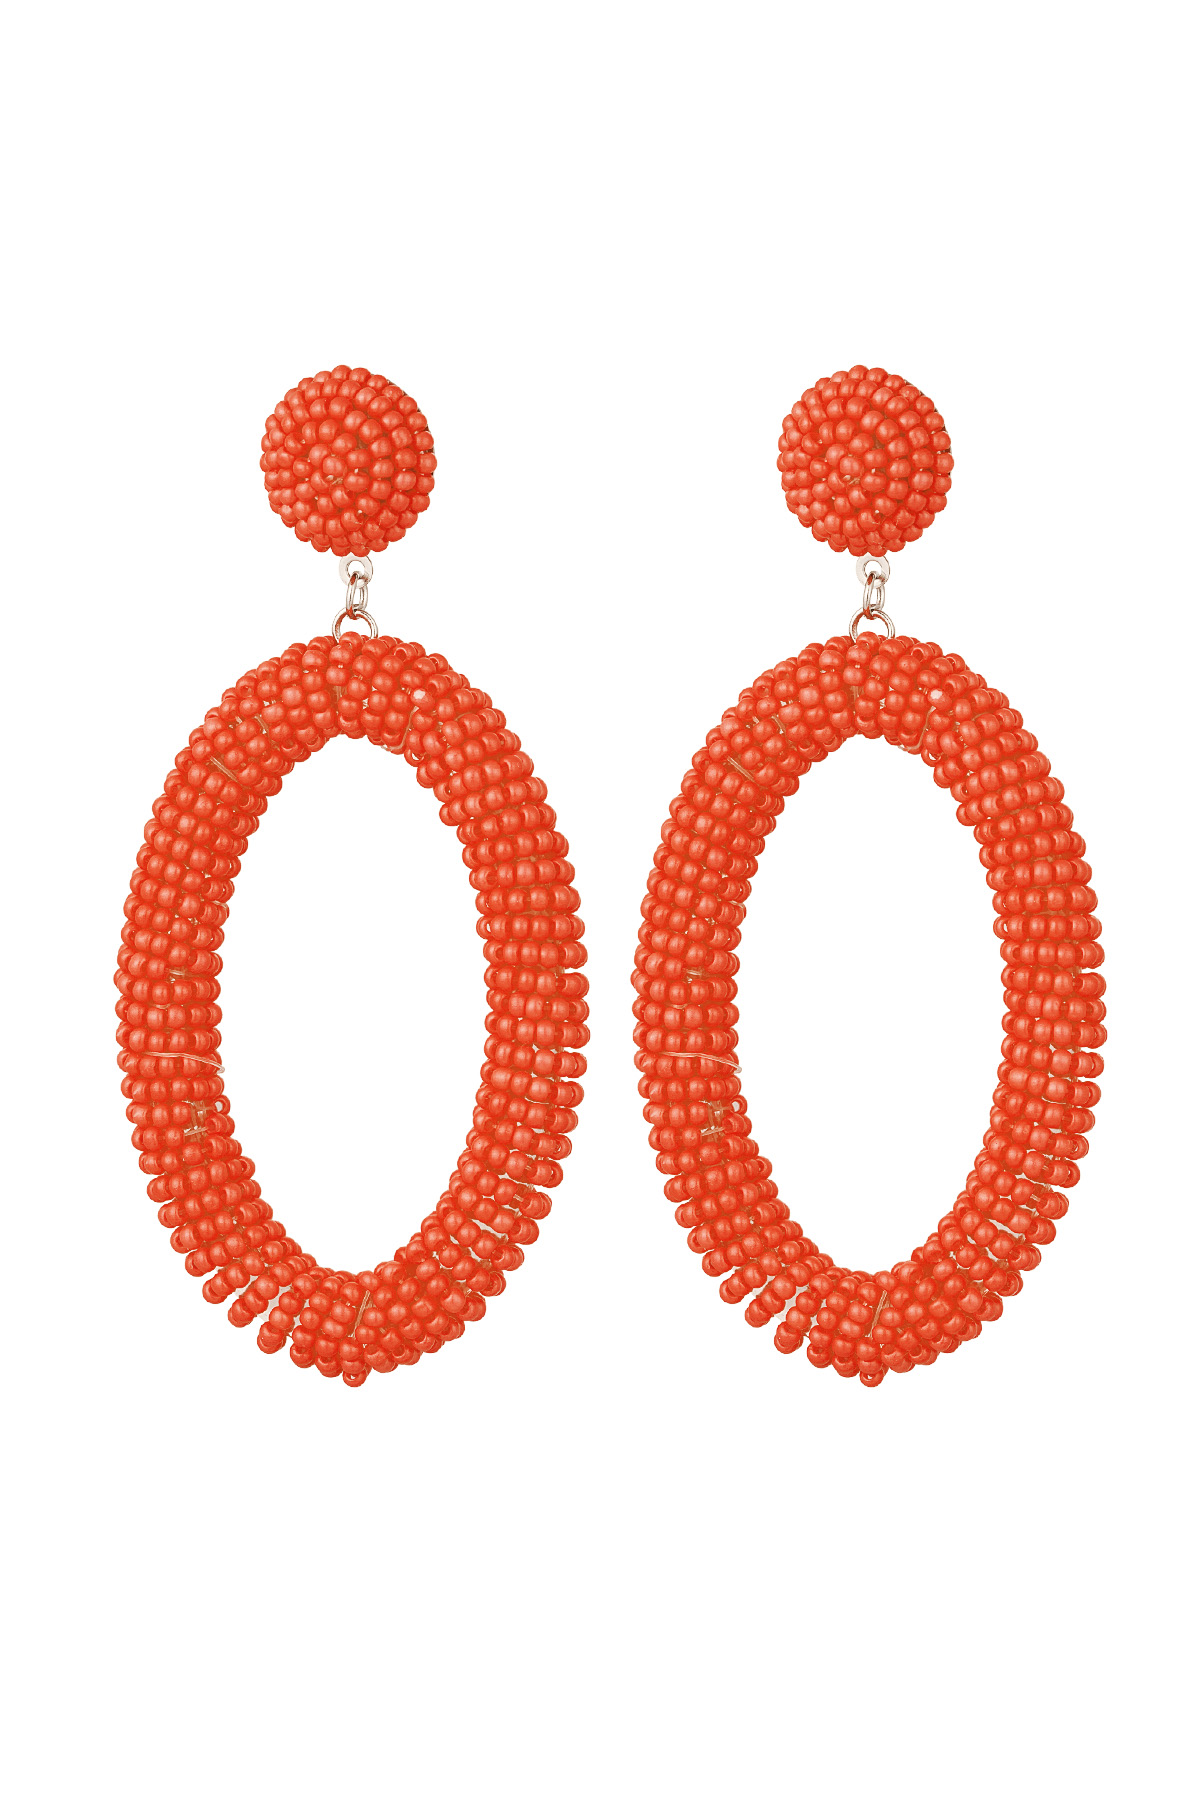 Boucles d'Oreilles Perles Bonbons Allongées - Orange Acier Inoxydable